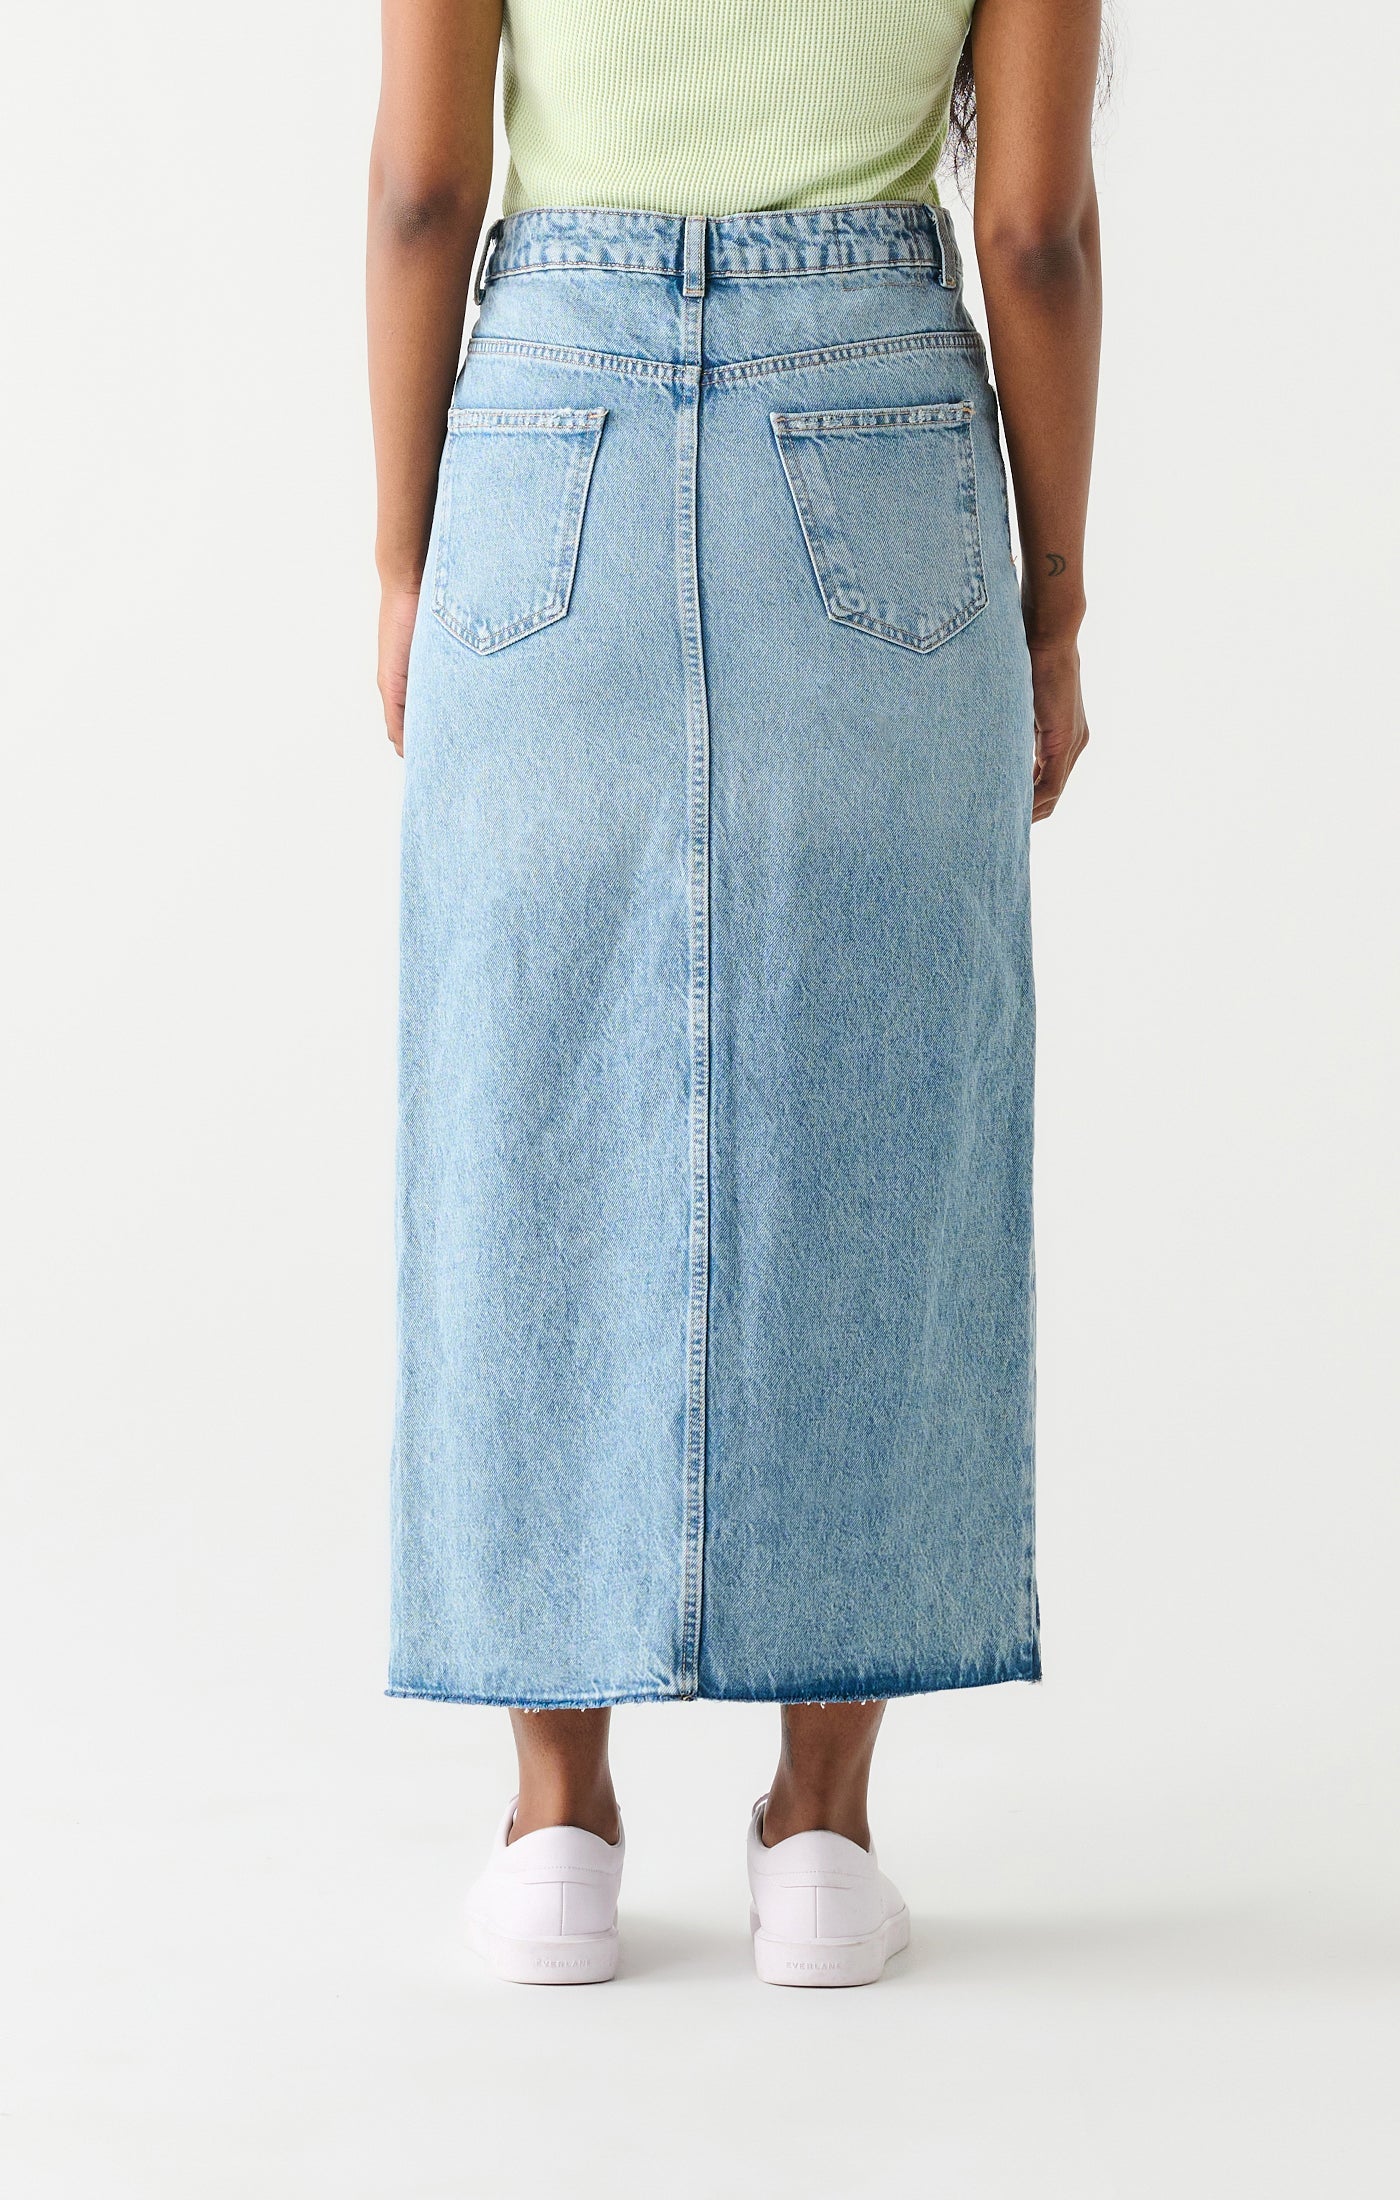 The Maxi Denim Skirt In Medium Wash